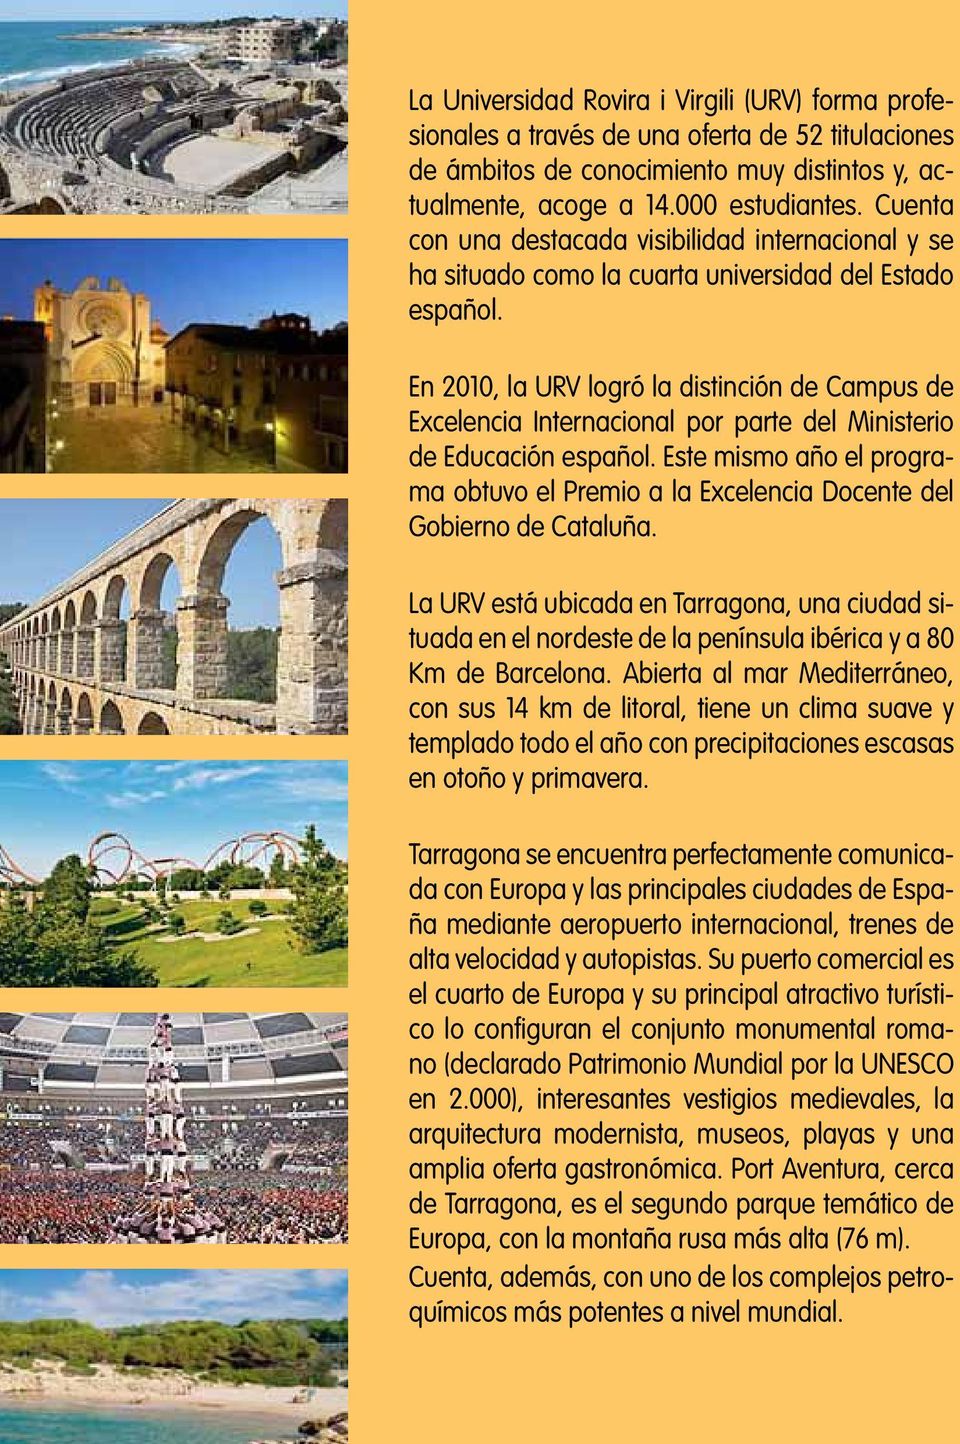 En 2010, la URV logró la distinción de Campus de Excelencia Internacional por parte del Ministerio de Educación español.